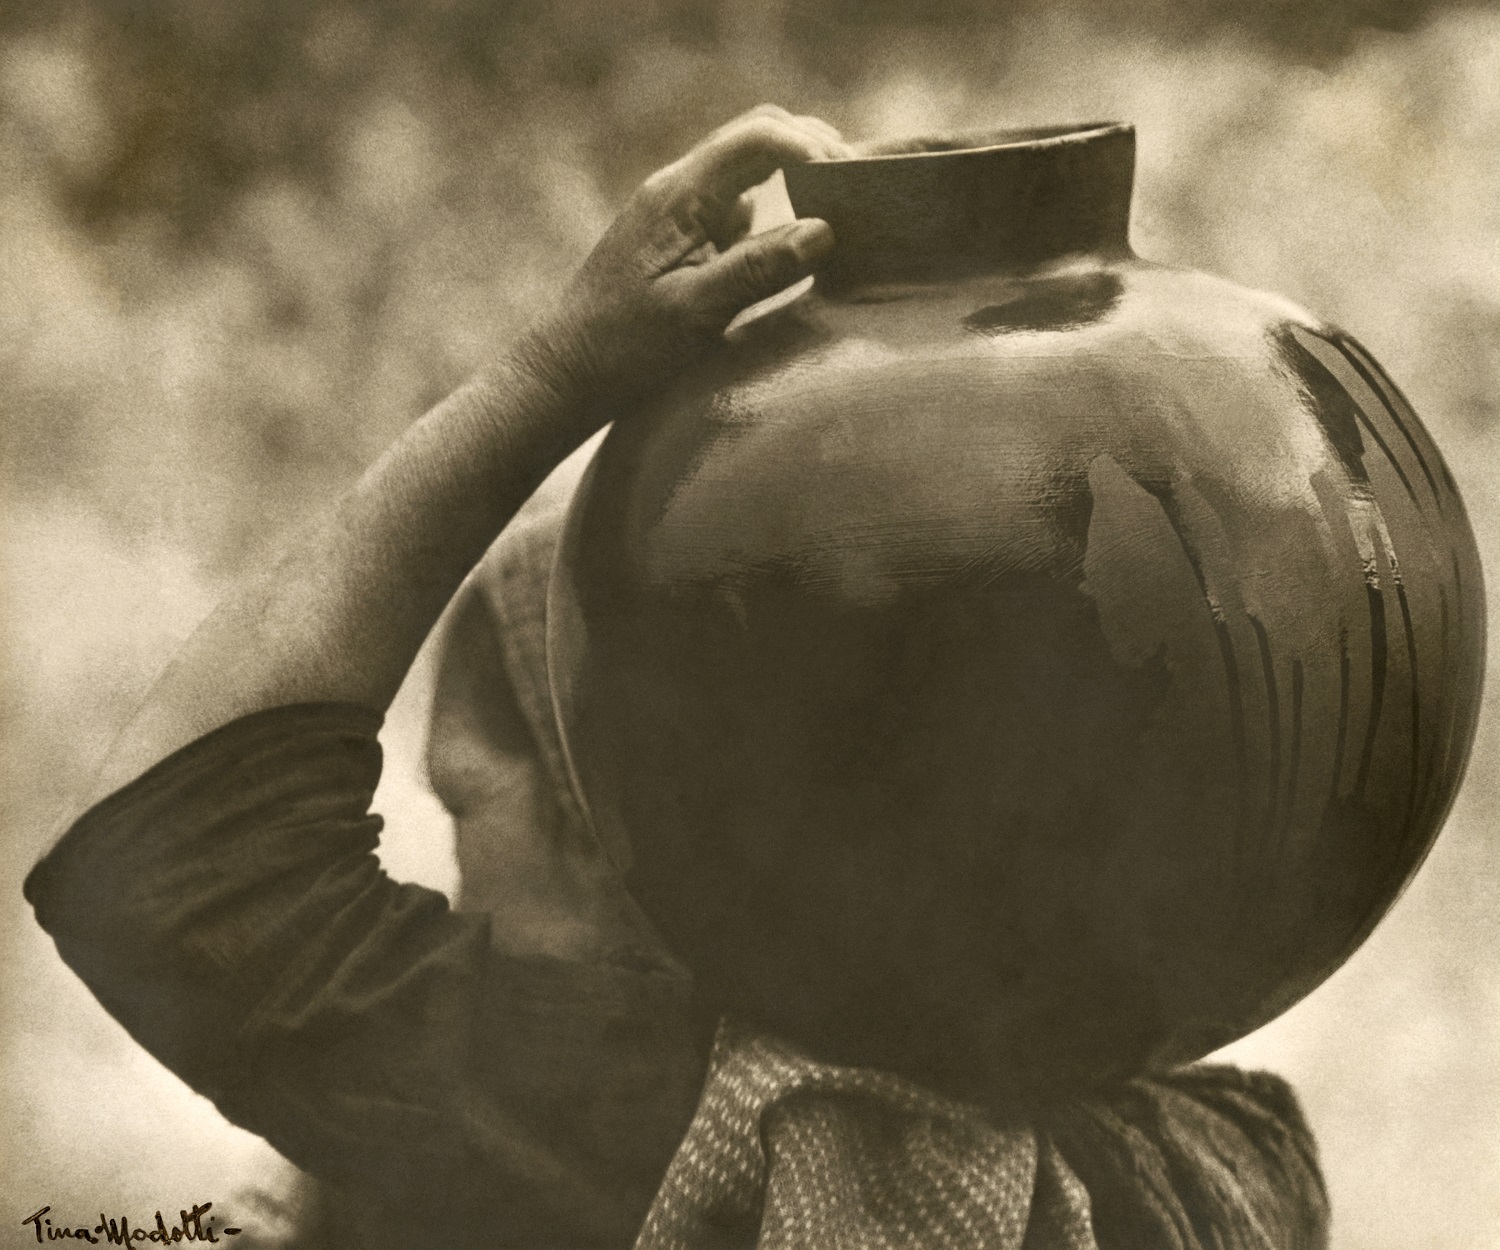 Tina Modotti. Fotografía 'Campesina zapoteca con cántaro al hombro', 1928. Colección archivo y fundación Televisa